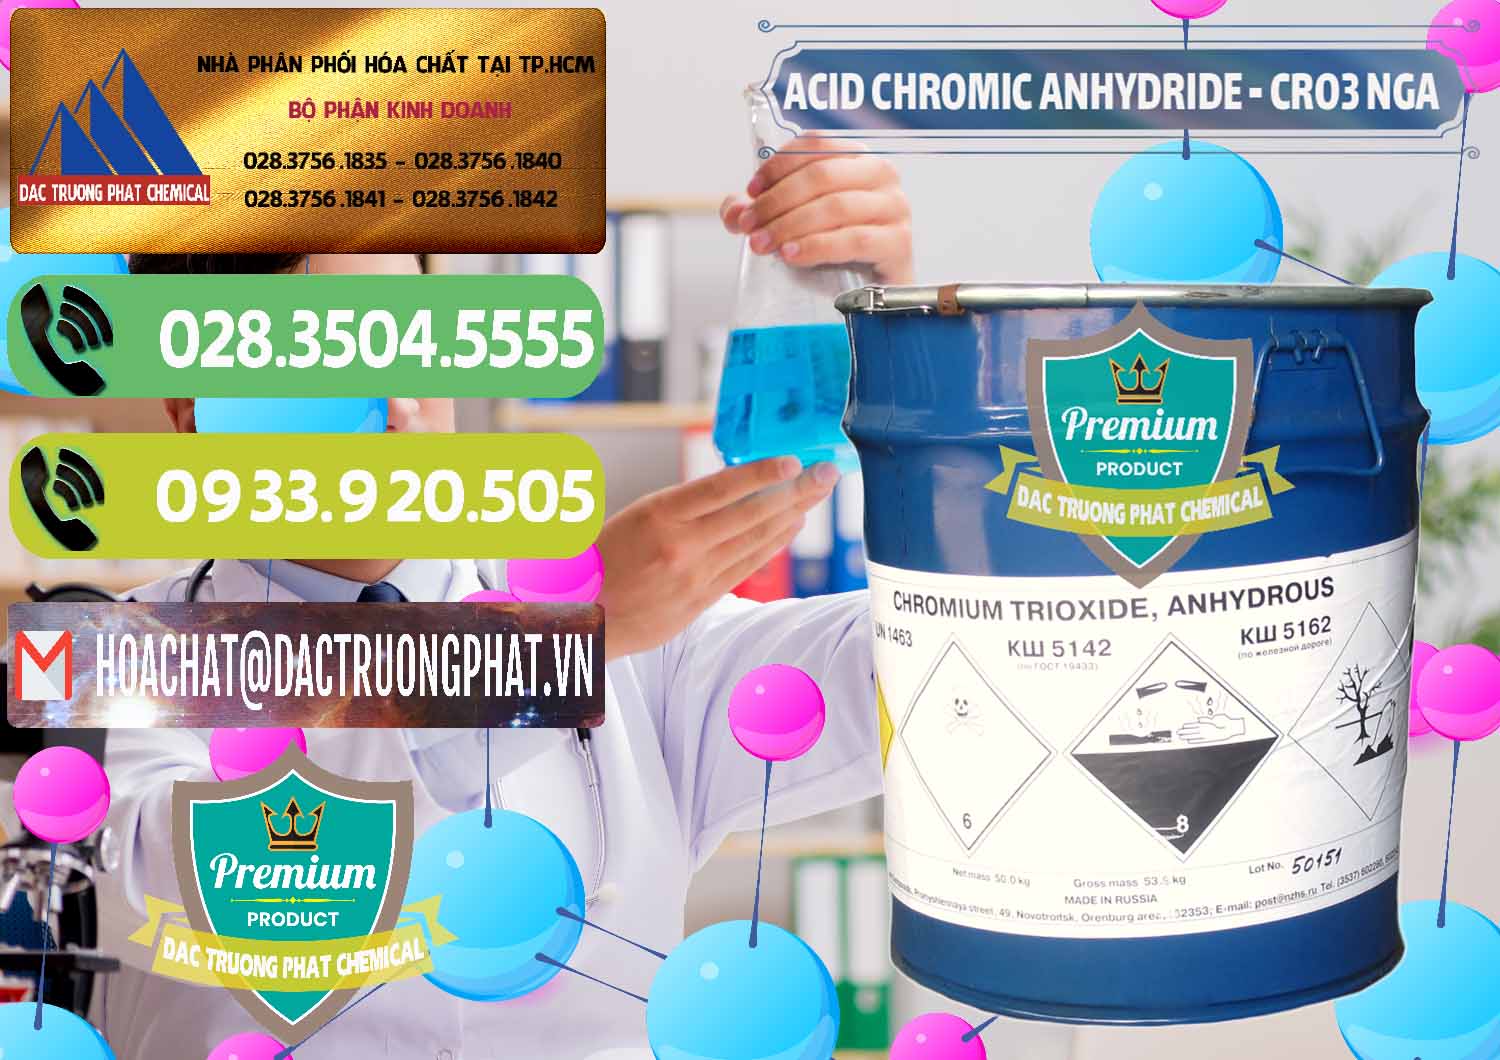 Nơi bán - phân phối Acid Chromic Anhydride - Cromic CRO3 Nga Russia - 0006 - Công ty phân phối & cung cấp hóa chất tại TP.HCM - hoachatmientay.vn